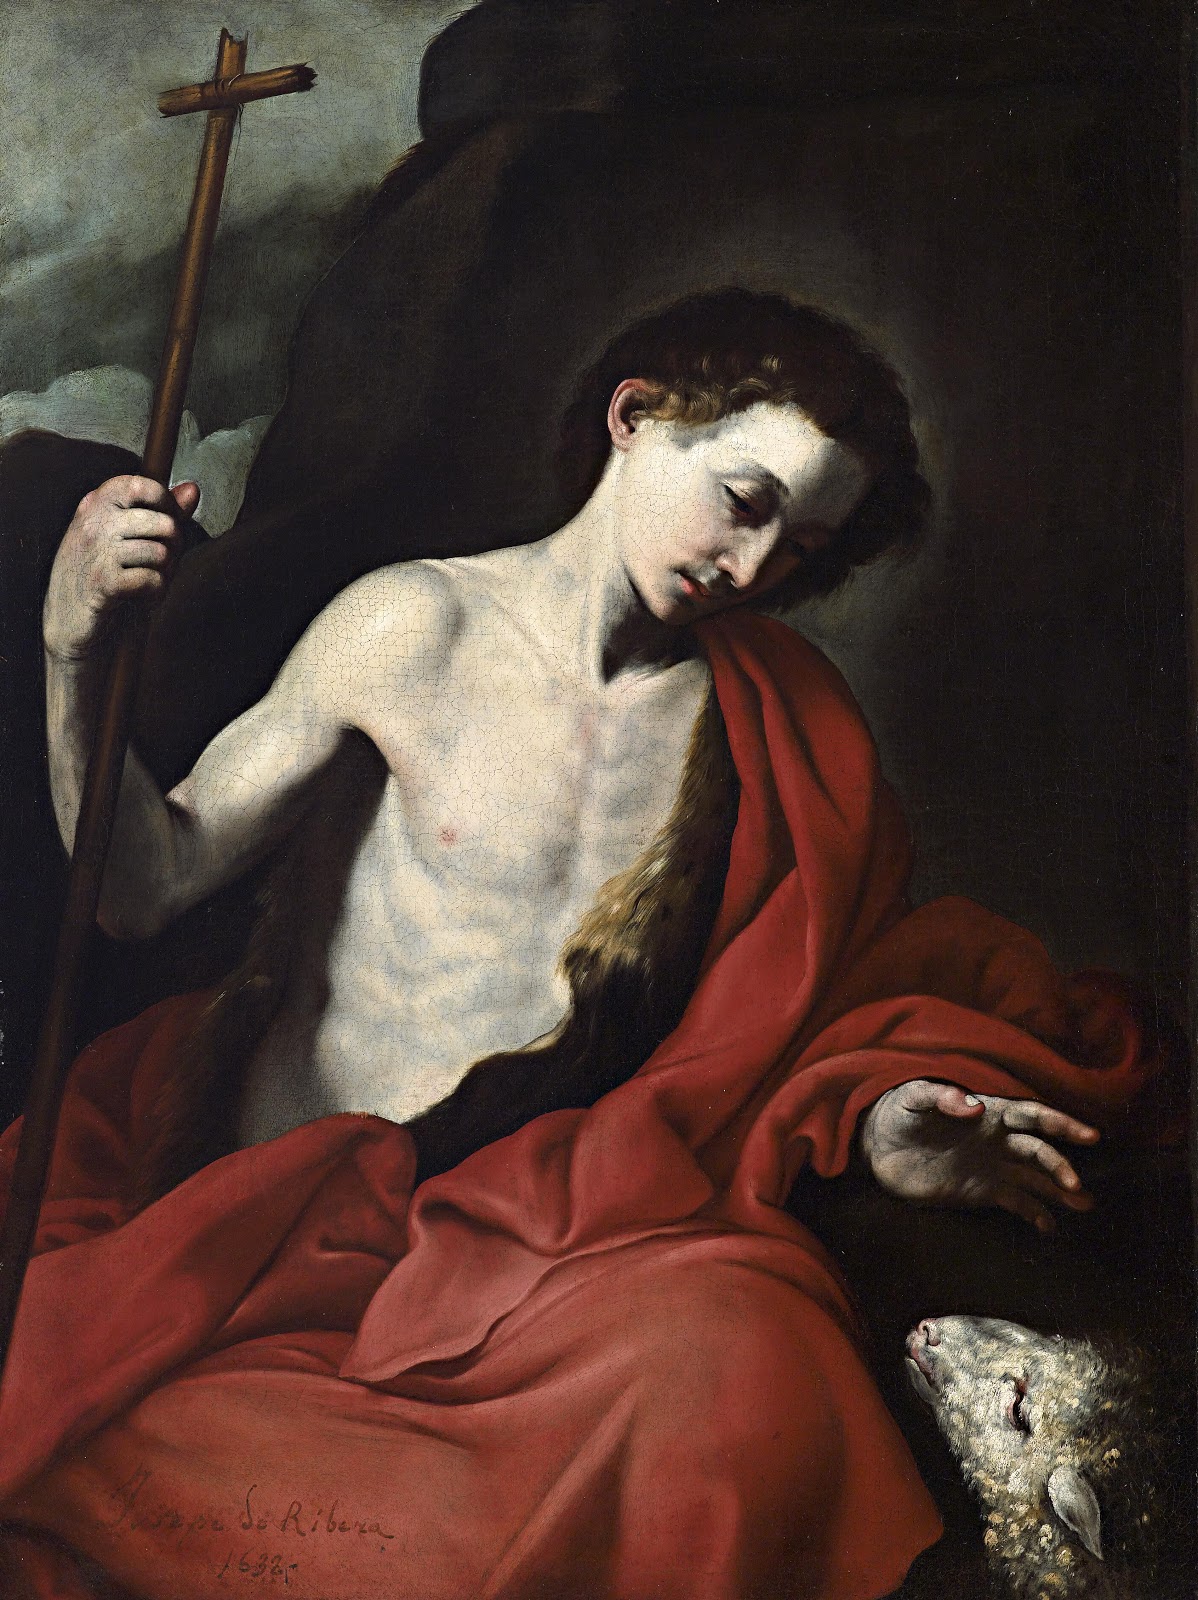 Jusepe+de+Ribera-1591-1652 (65).jpg